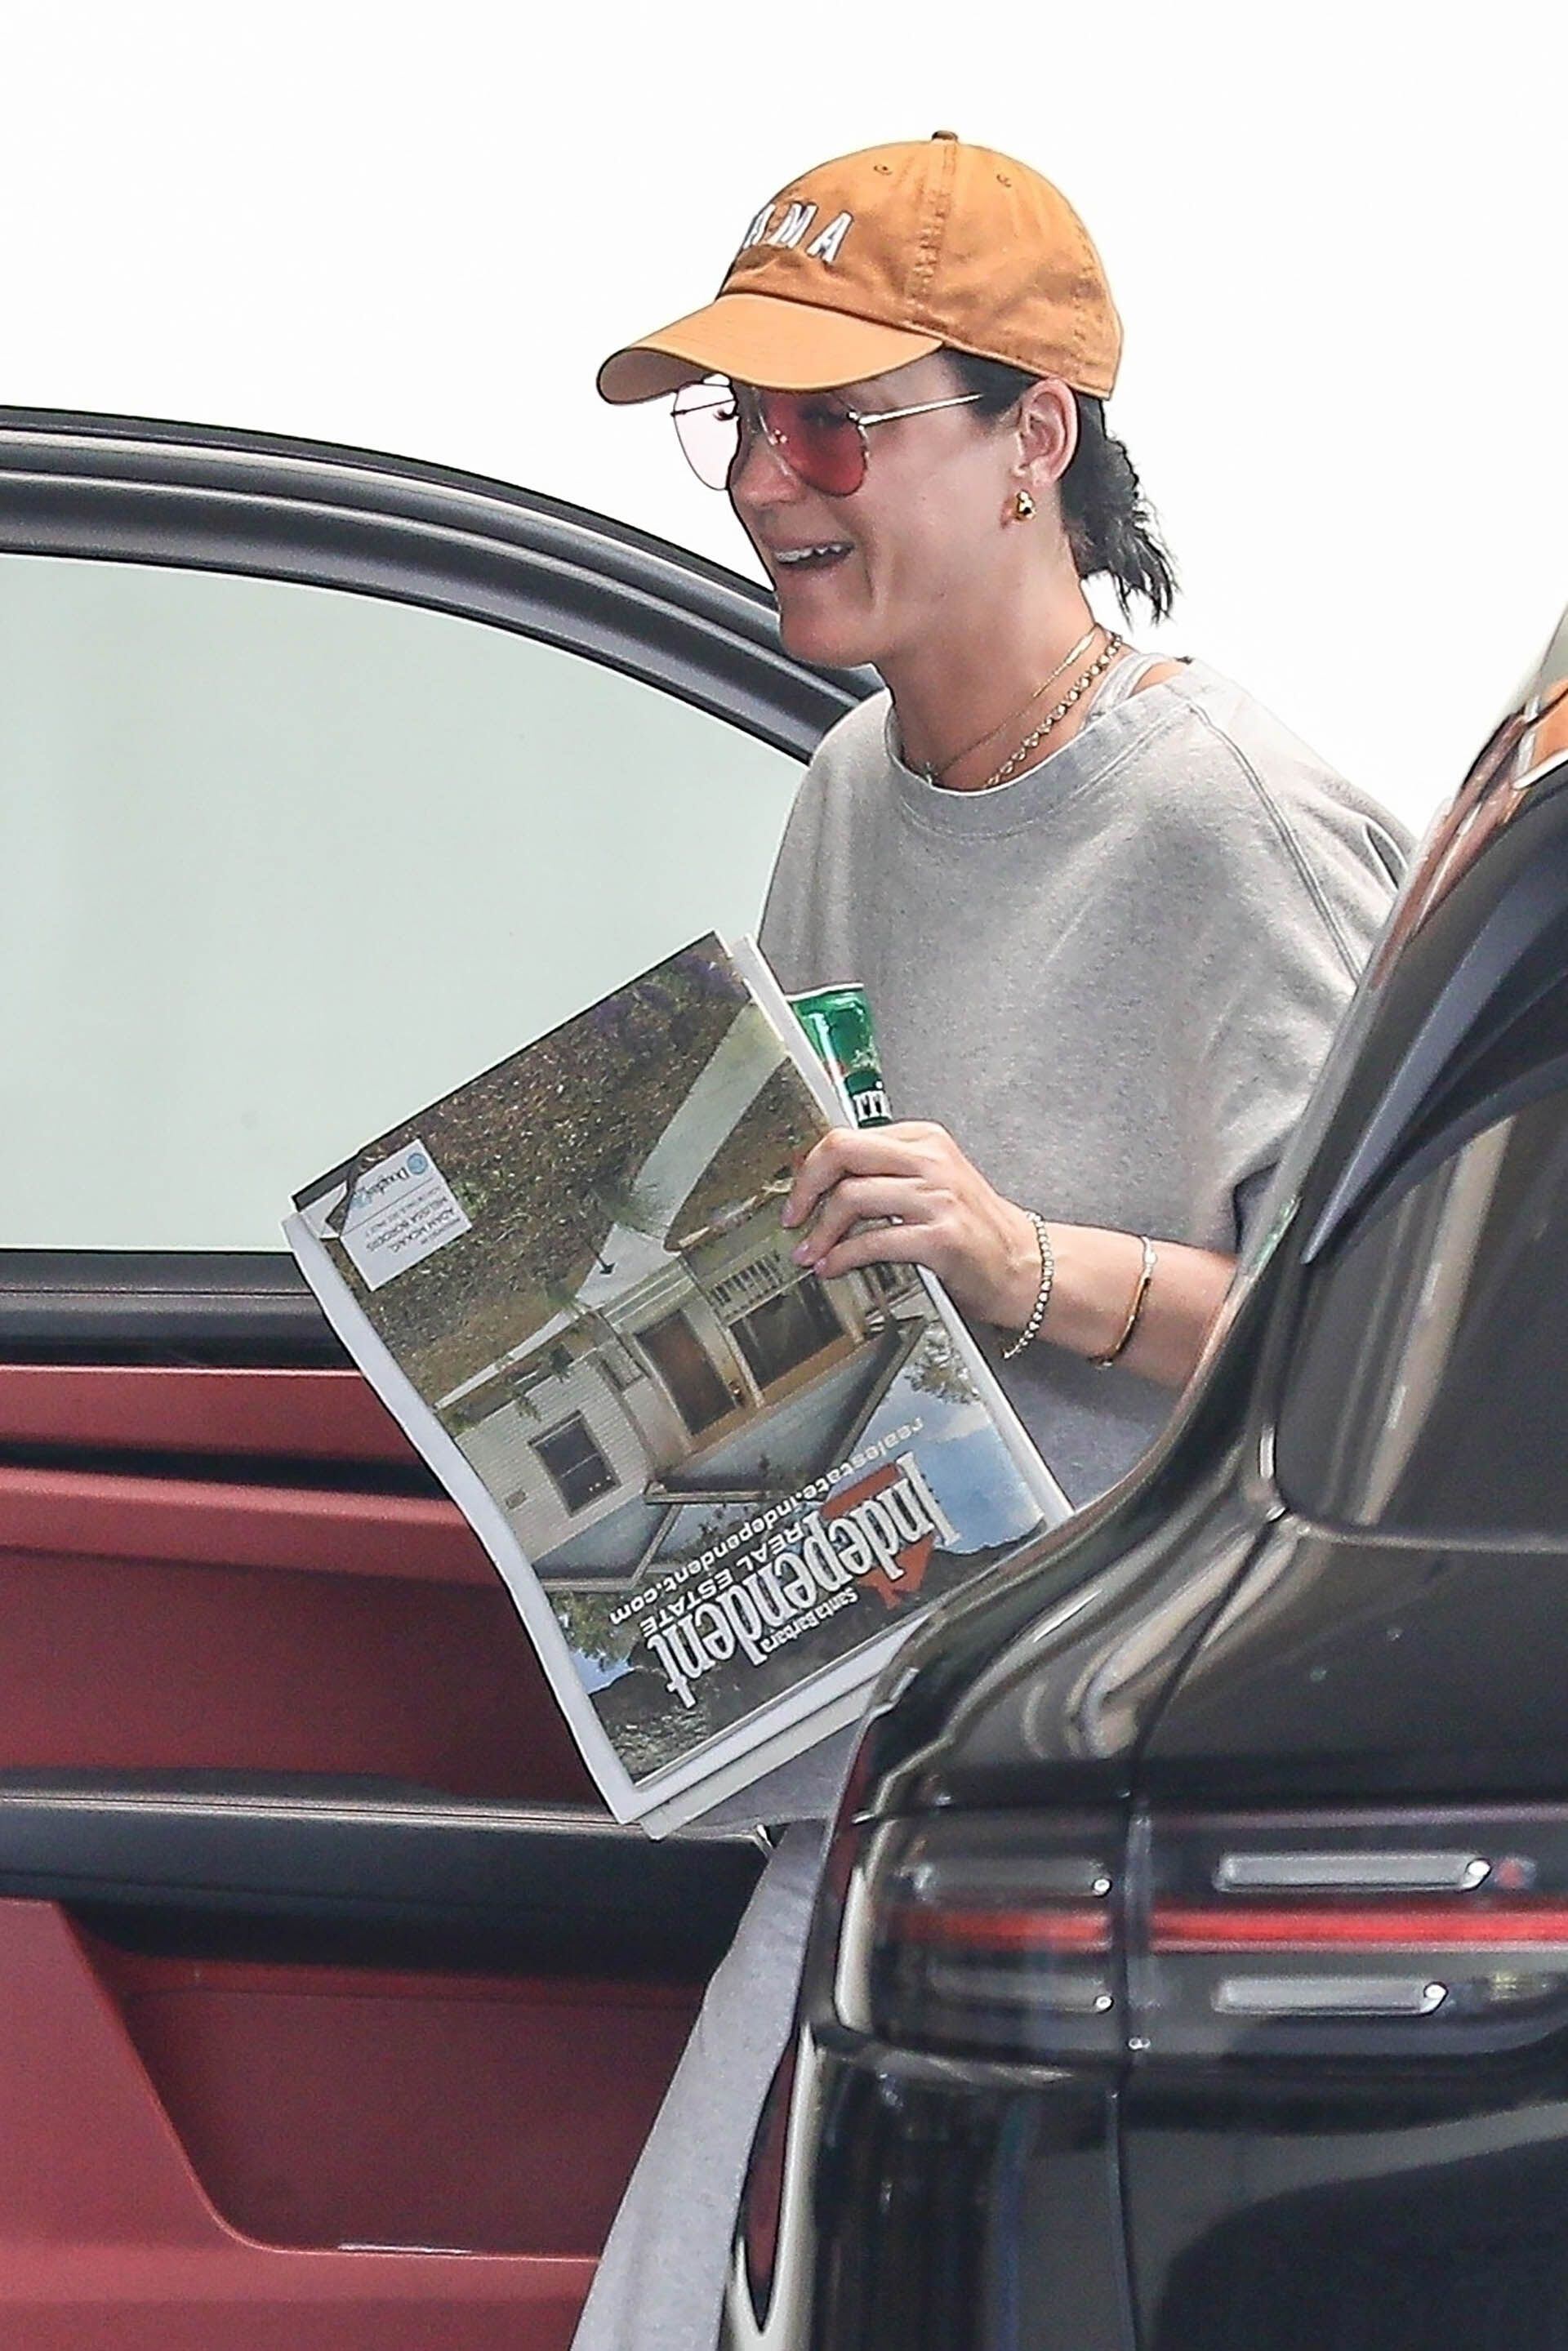 Katy Perry fue fotografiada cuando llegaba a un exclusivo hotel de Beverly Hills, en donde se reunió con una amiga para almorzar. La cantante llevaba el diario y un agua para tomar. Lució un look descontracturado, gorra y lentes de sol